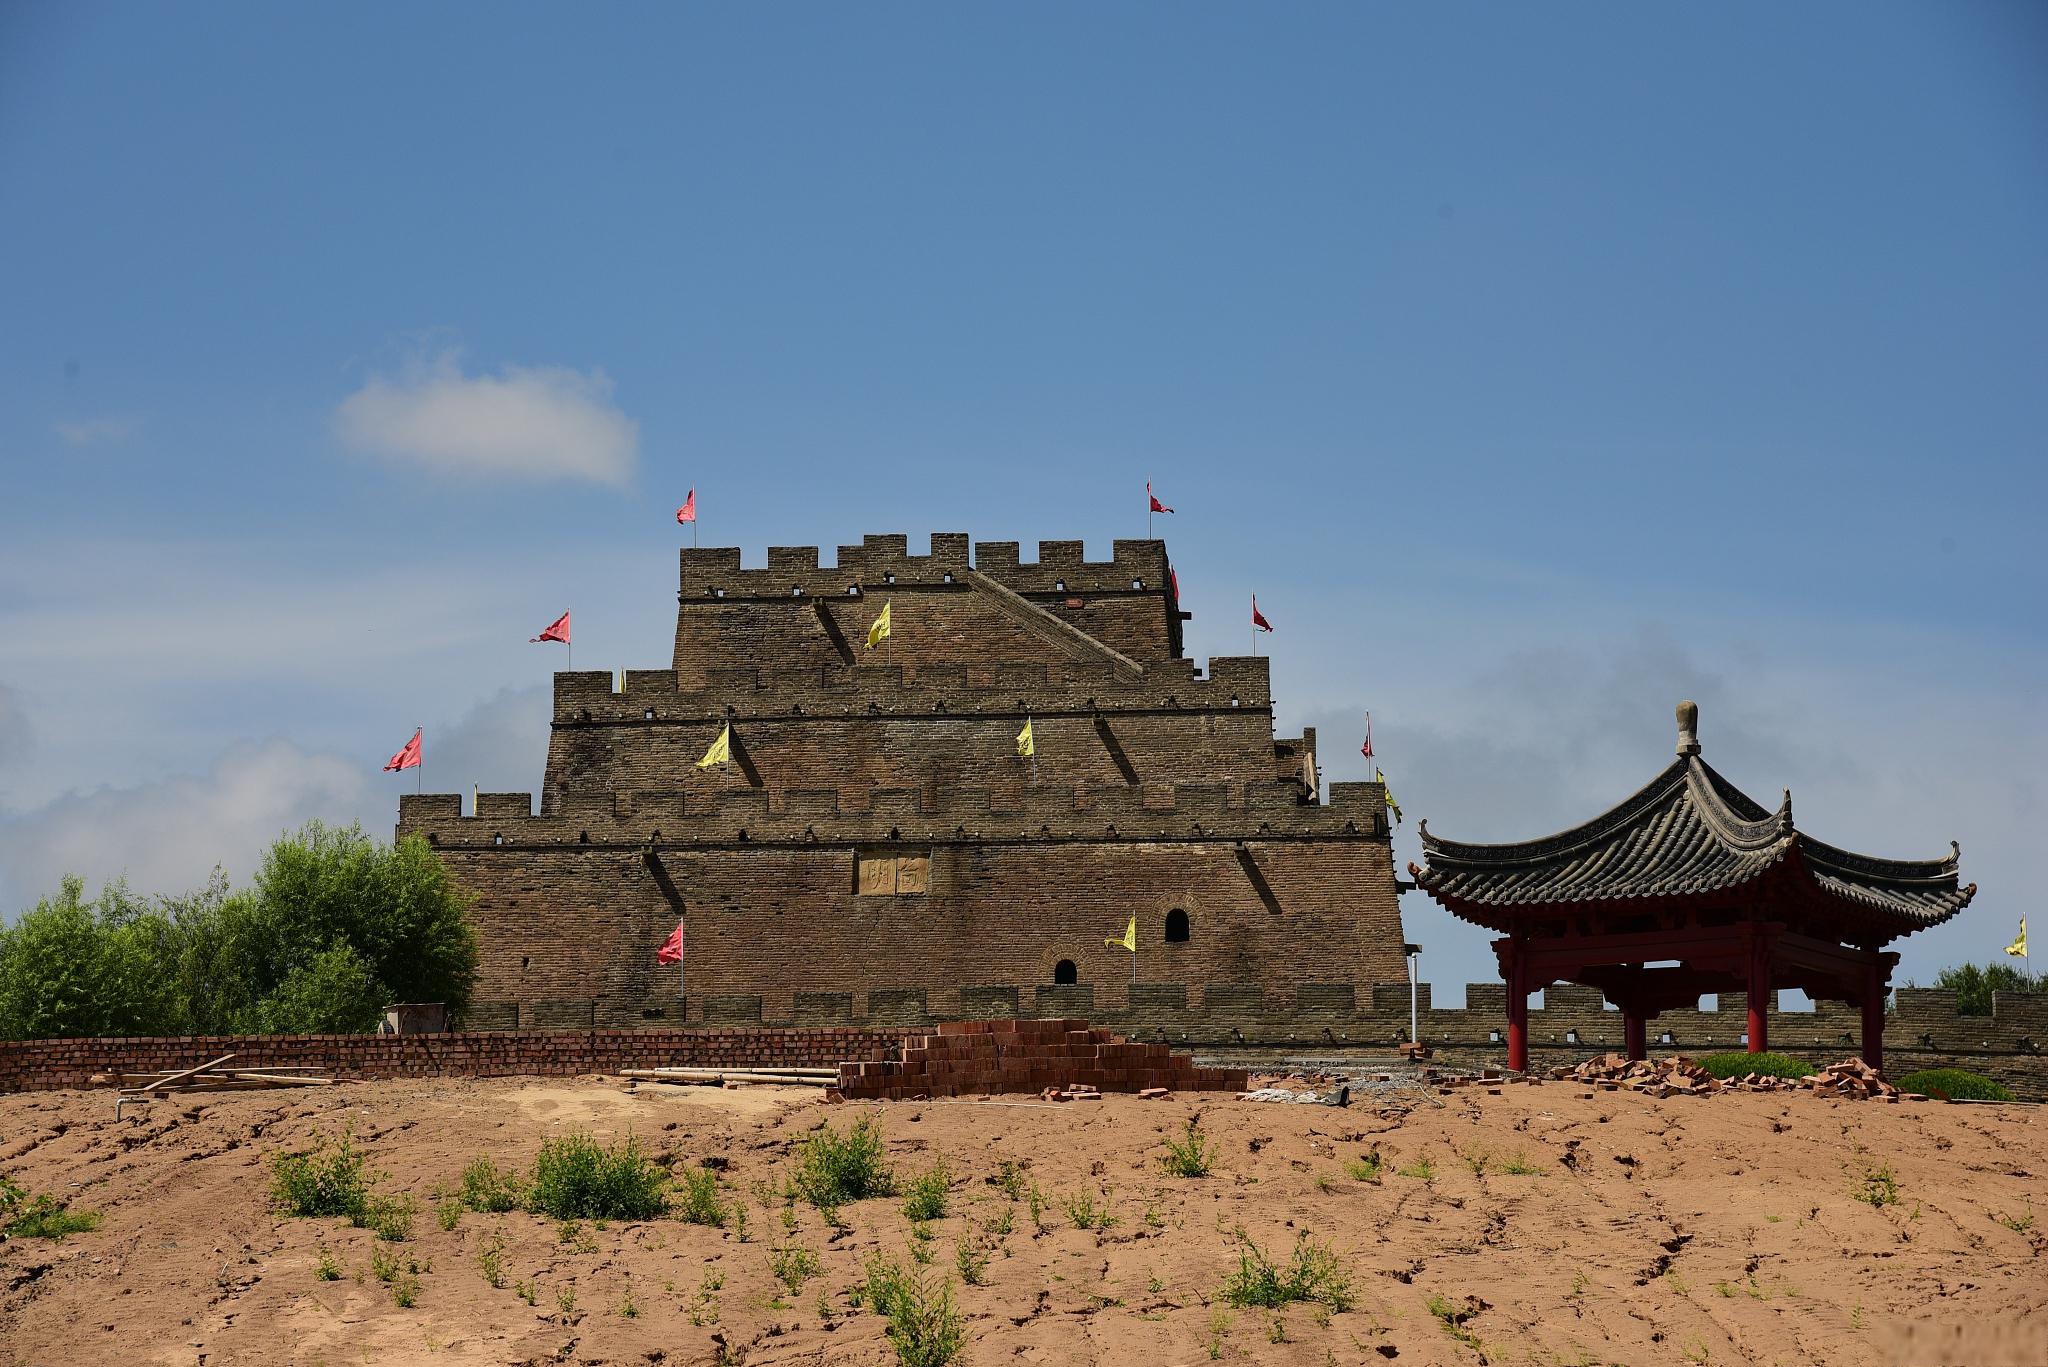 门源旅游景点大全 门源,位于中国青海省东北部,拥有丰富的旅游资源